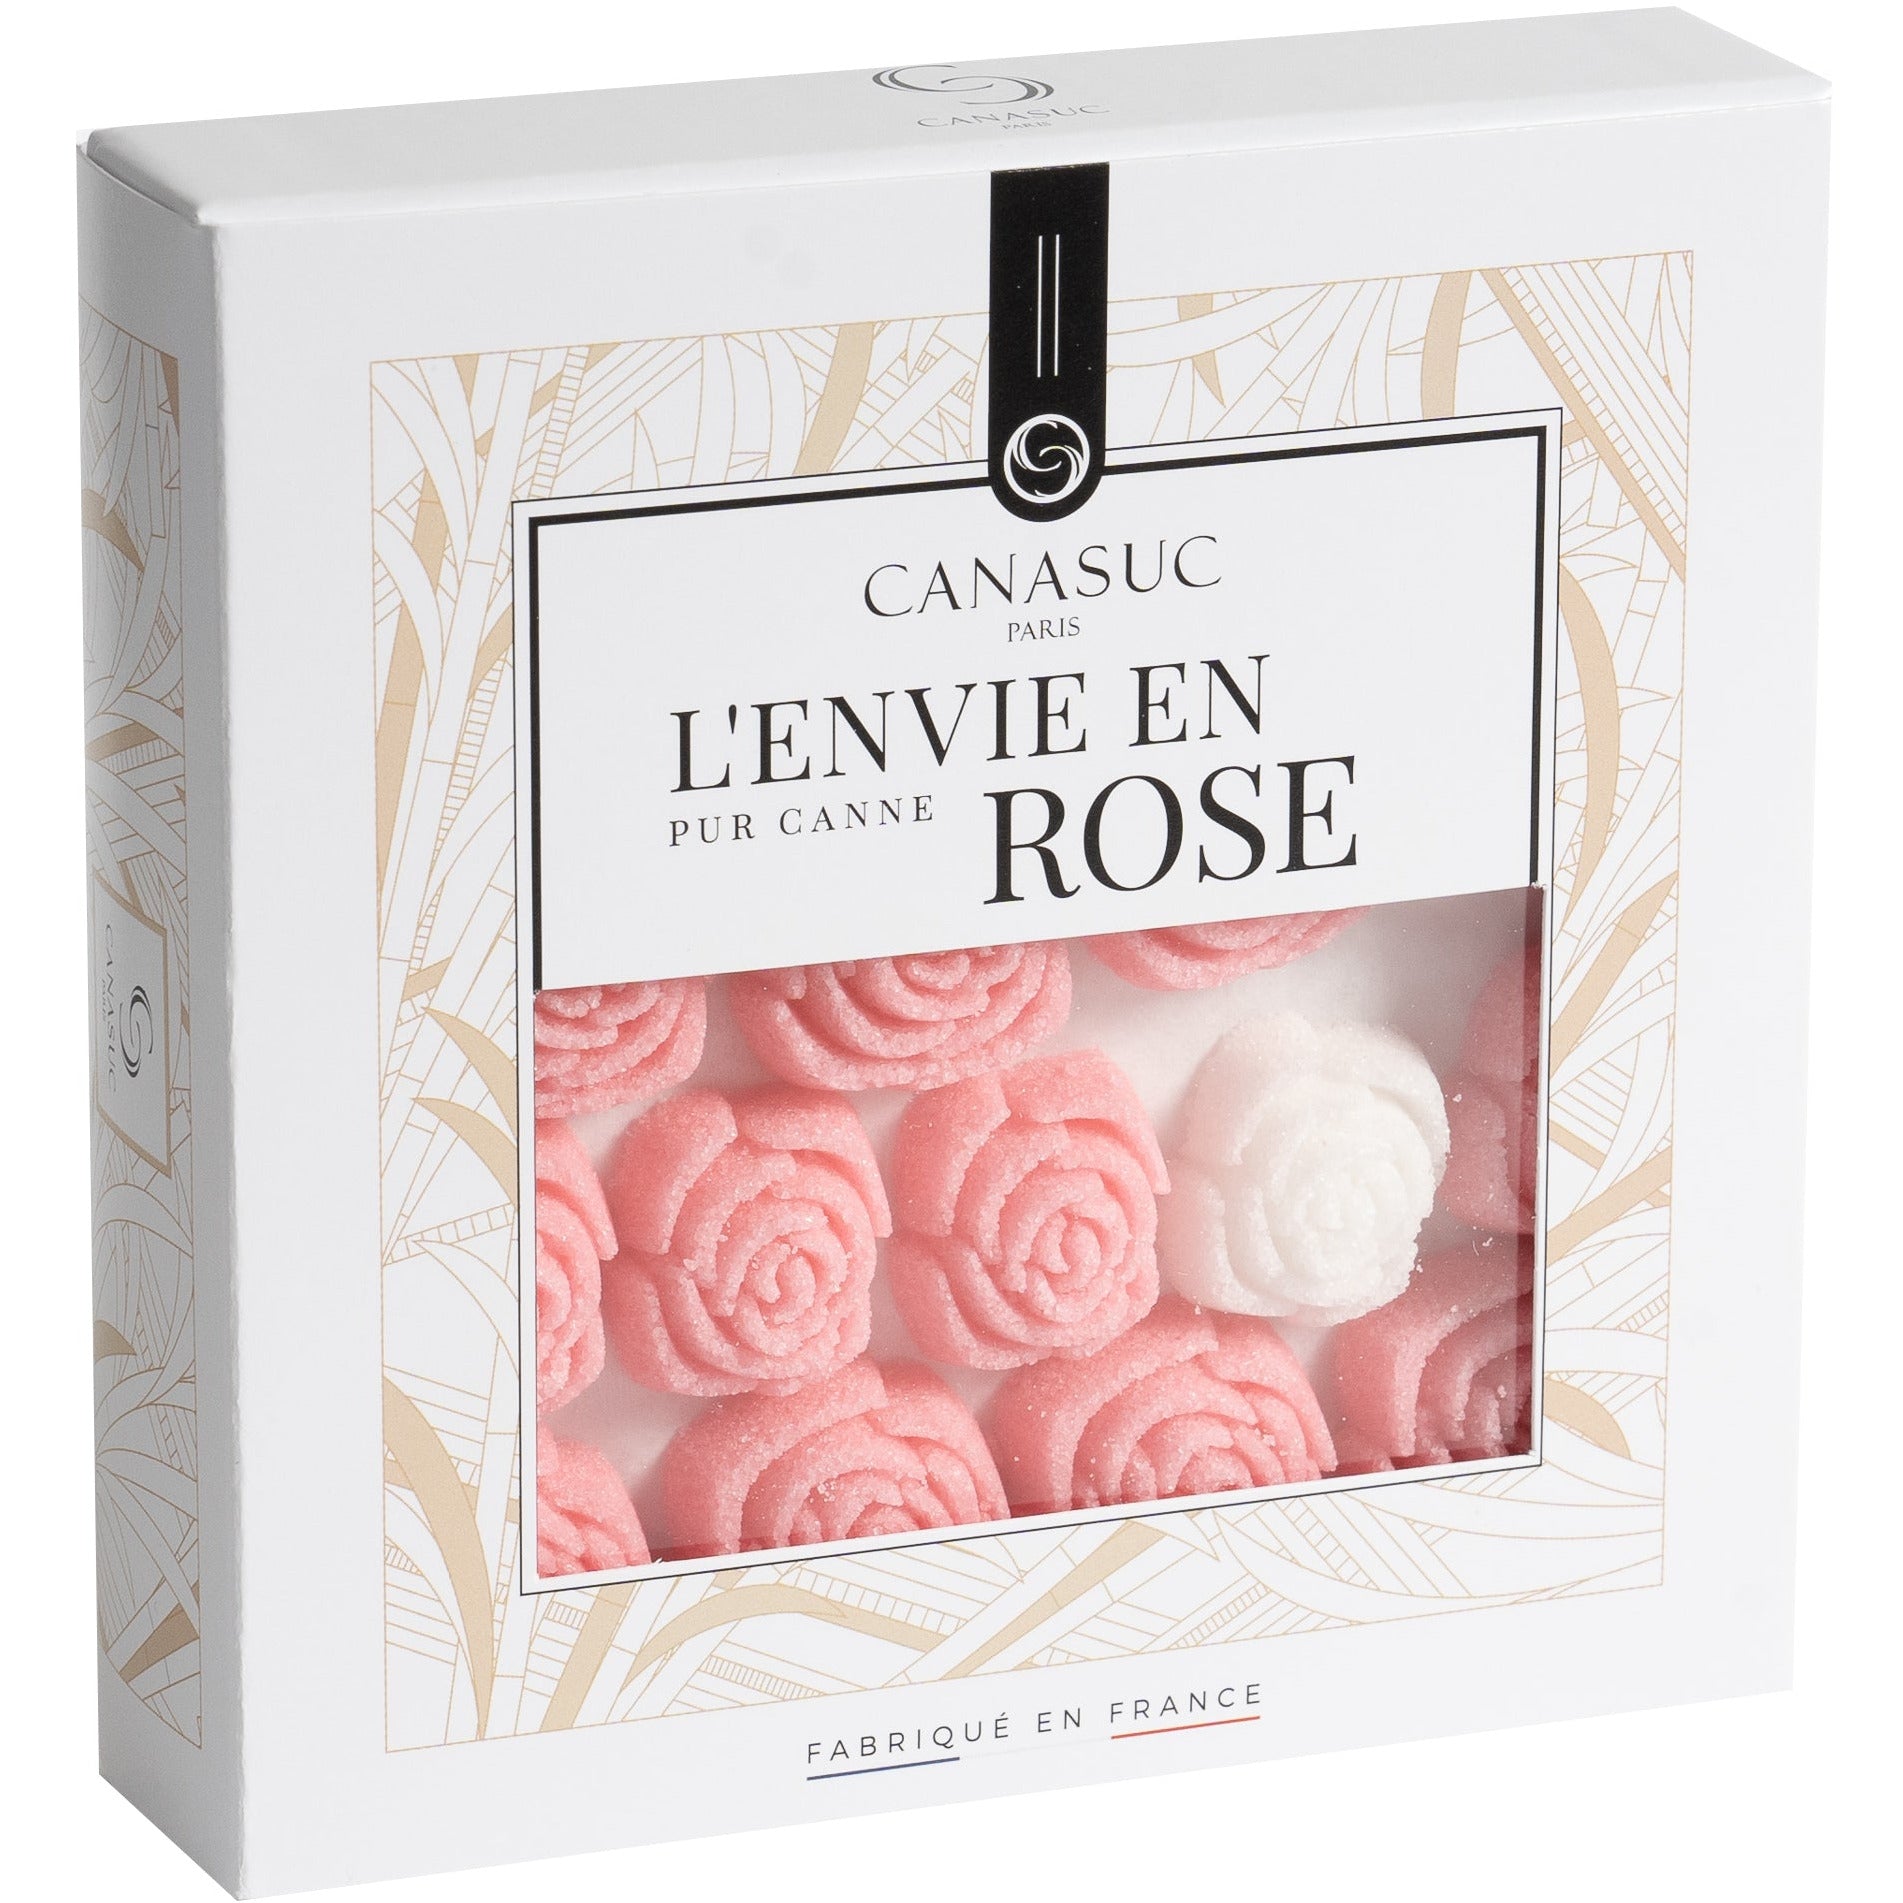 Sugar Cubes, L'Envie en Rose (envidia en rosa)